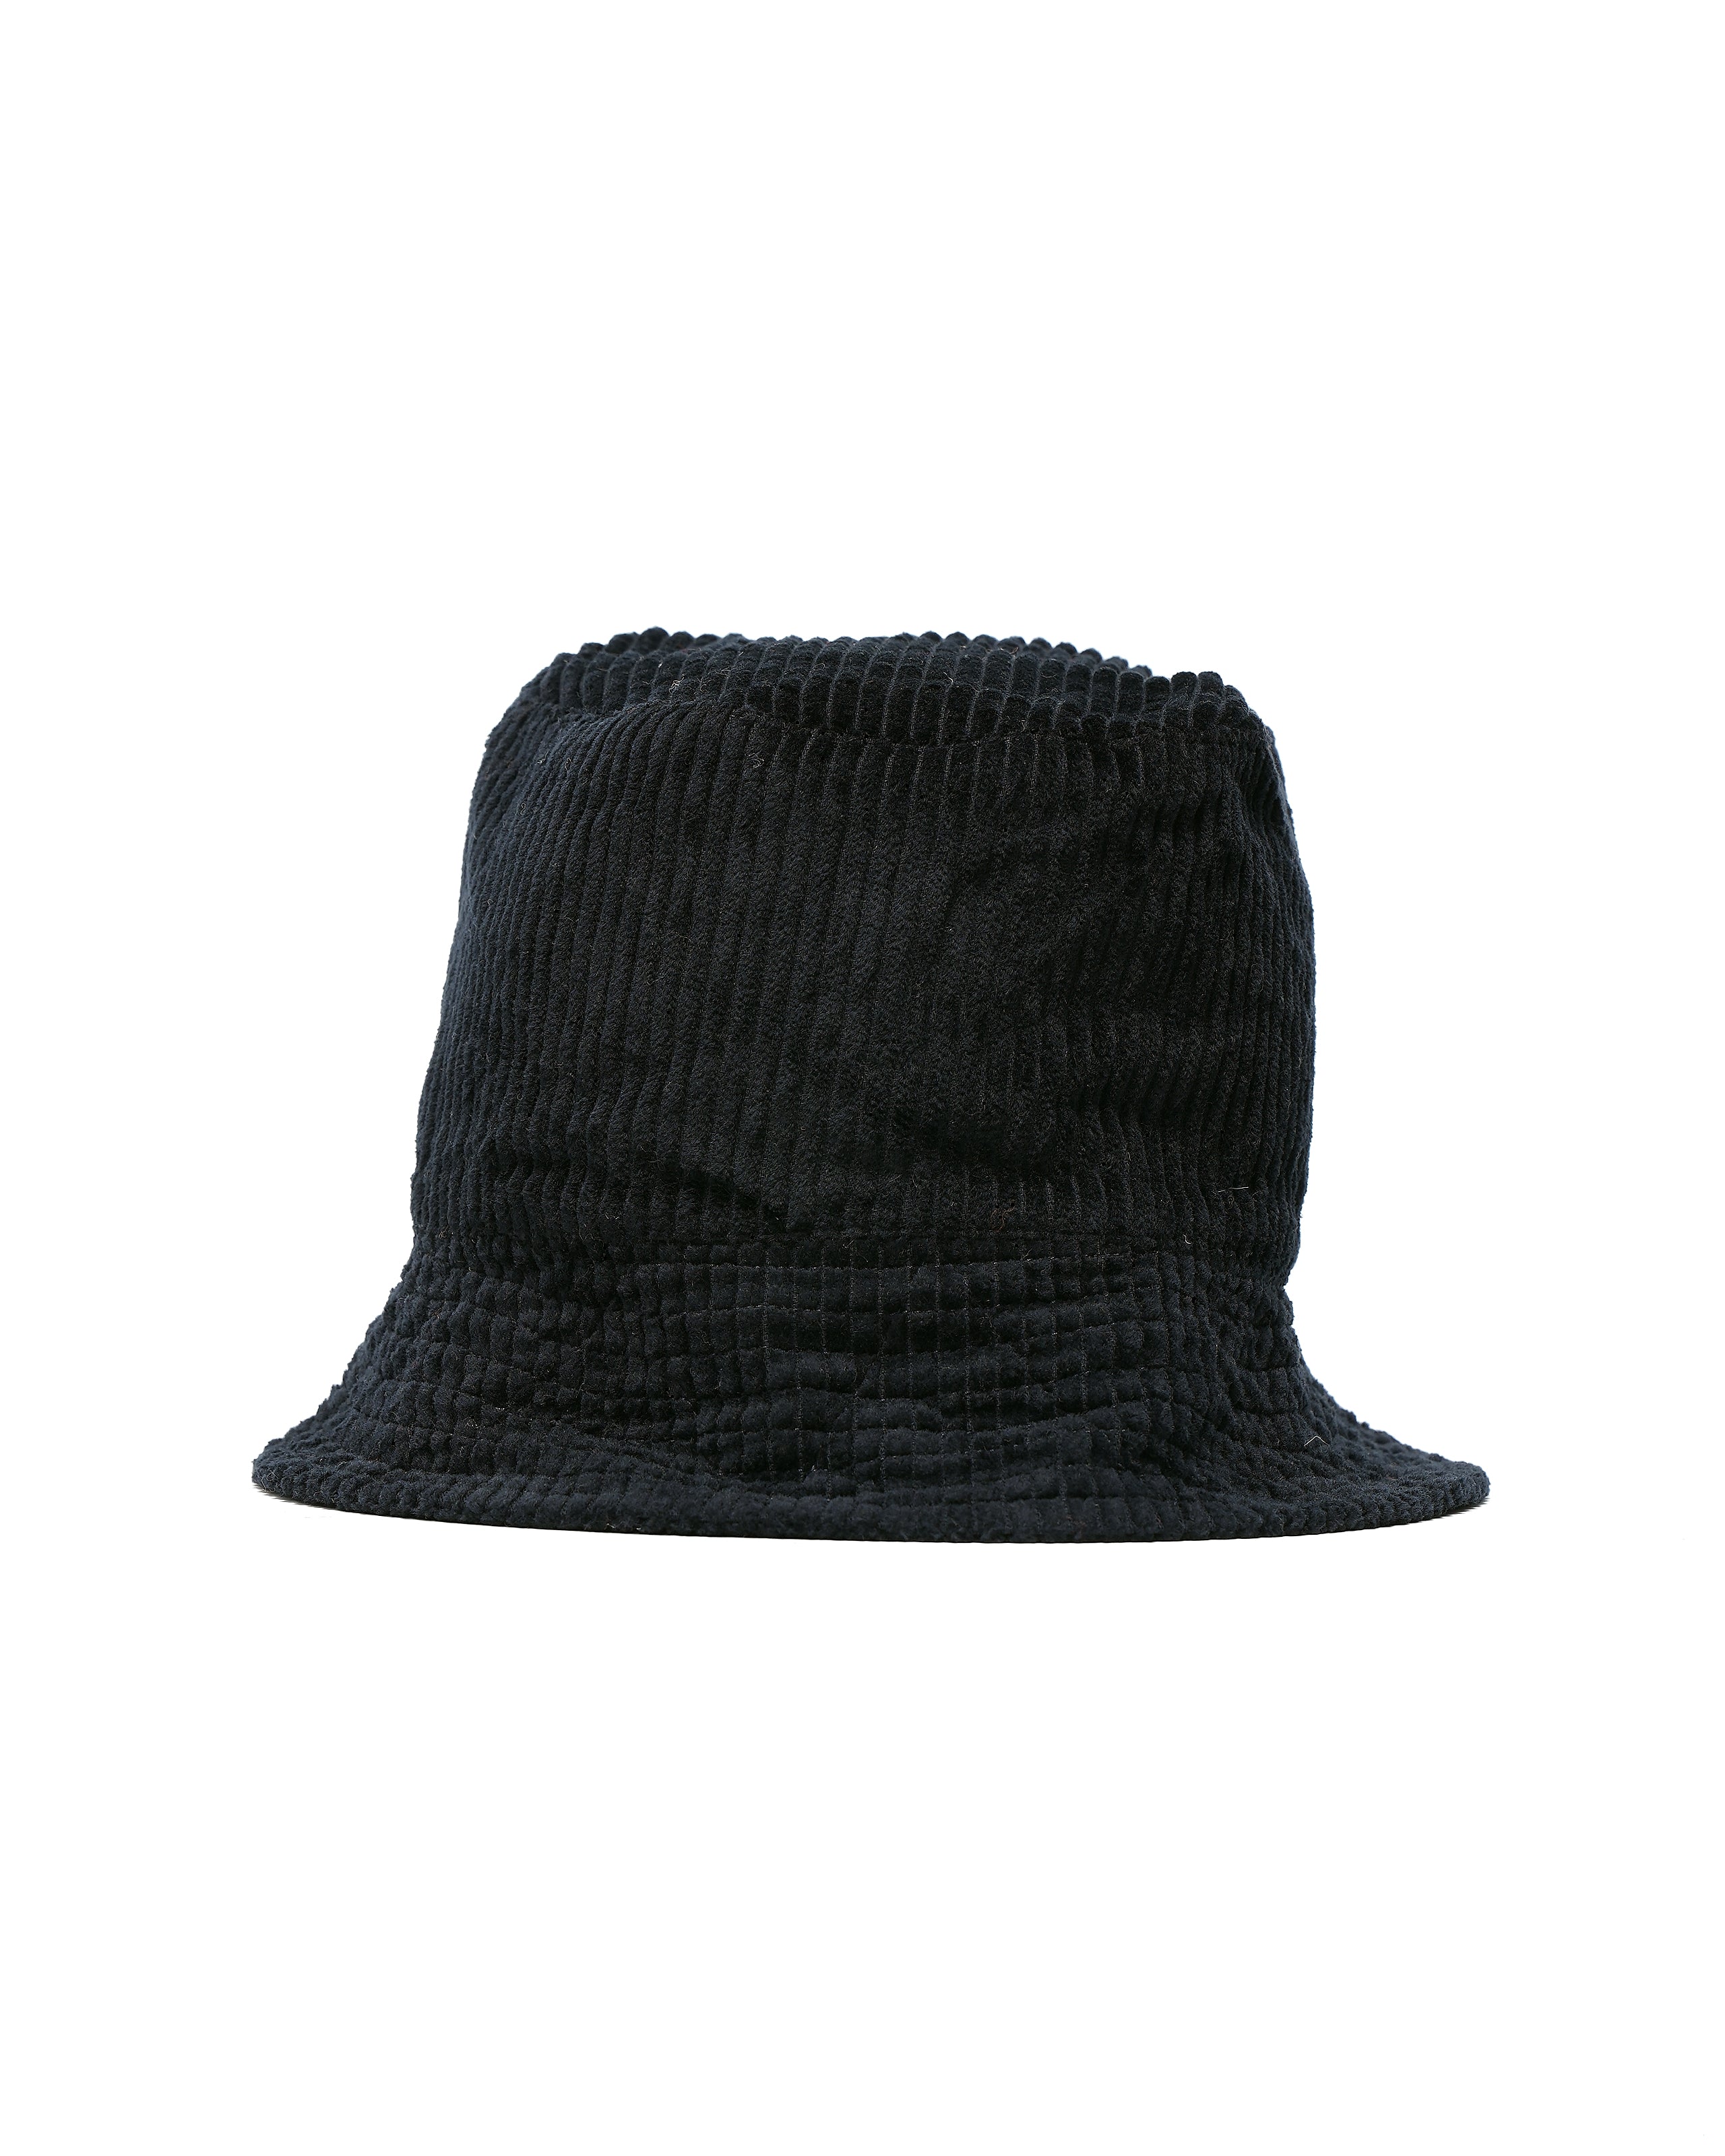 Bucket Hat - Dk. Navy Cotton 4.5W Corduroy